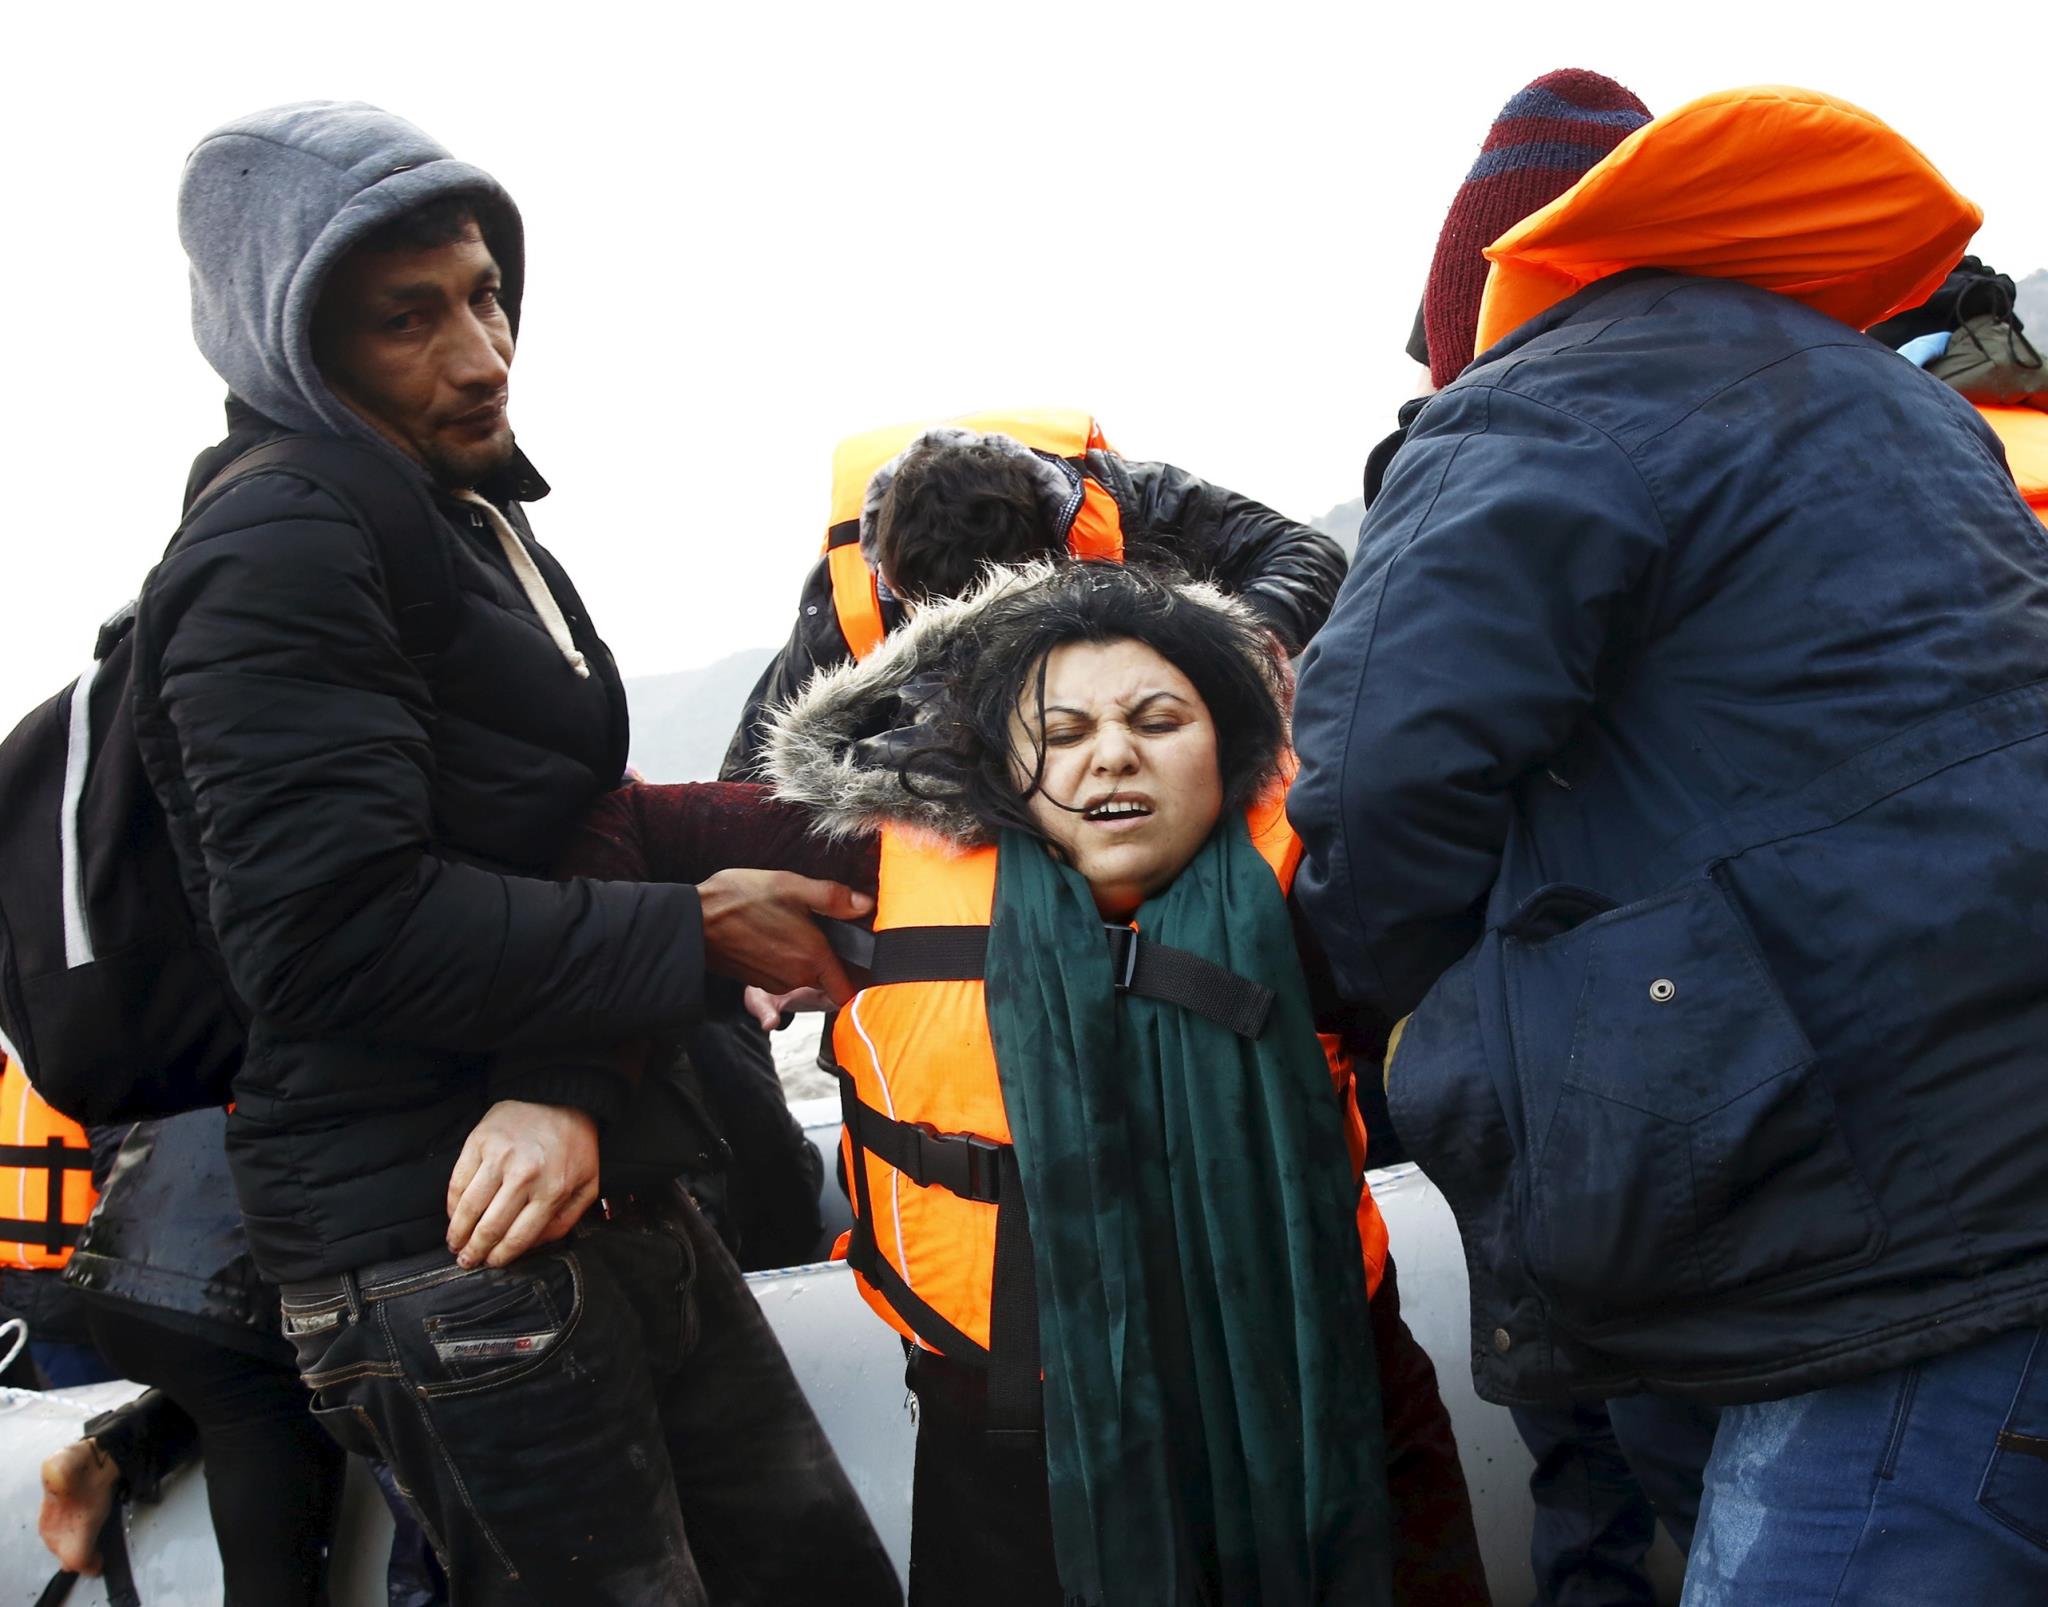 En lo que va de 2016 más de 45 mil refugiados han llegado a Europa huyendo de los conflictos en sus naciones de origen.